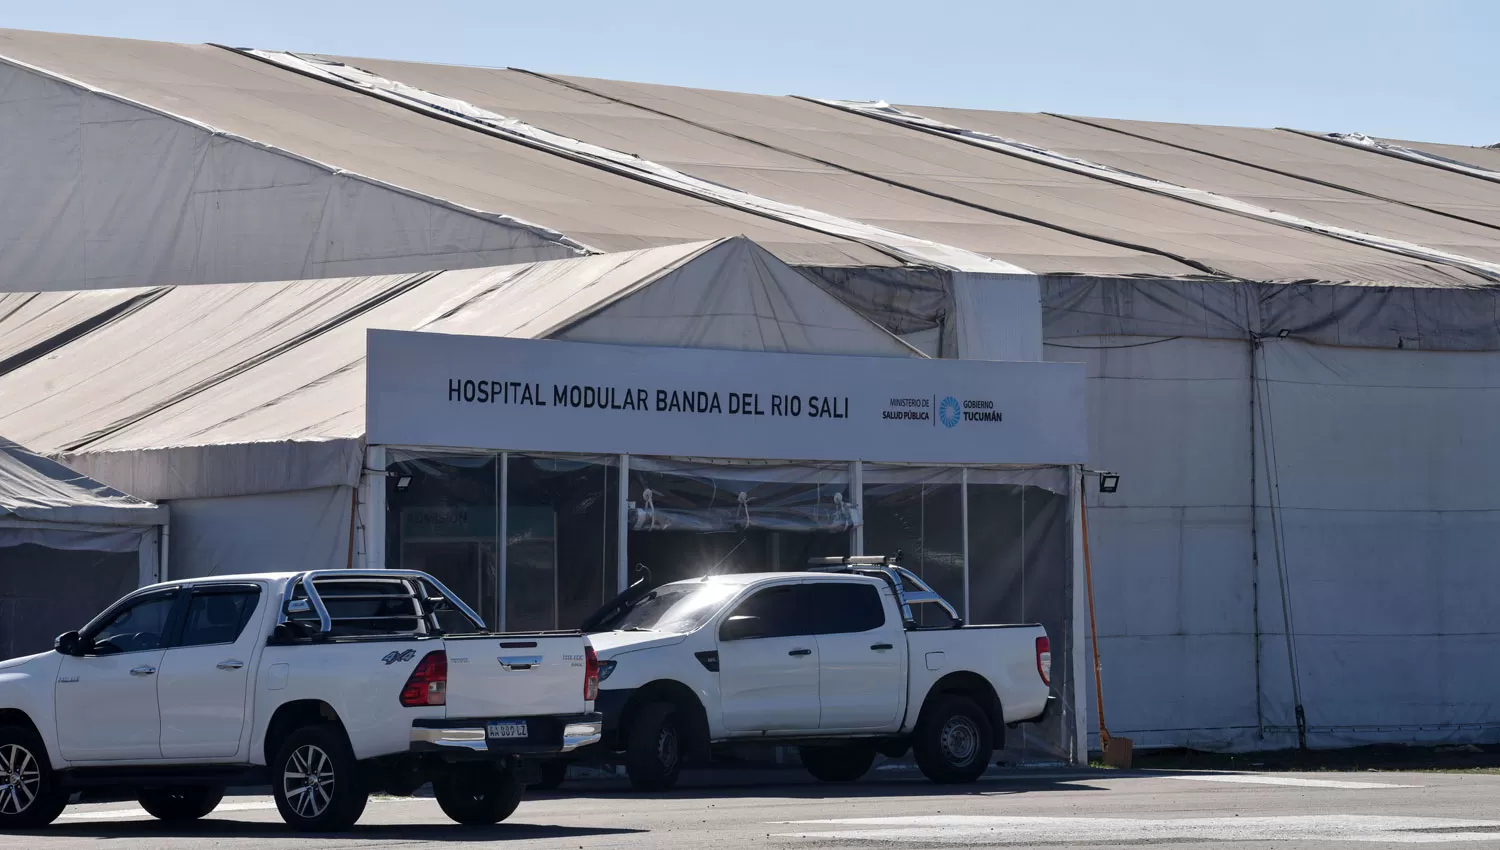 EN BANDA DEL RÍO SALÍ. El centro asistencial fue instalado por la pandemia en un predio del Hospital del Este Eva Perón.